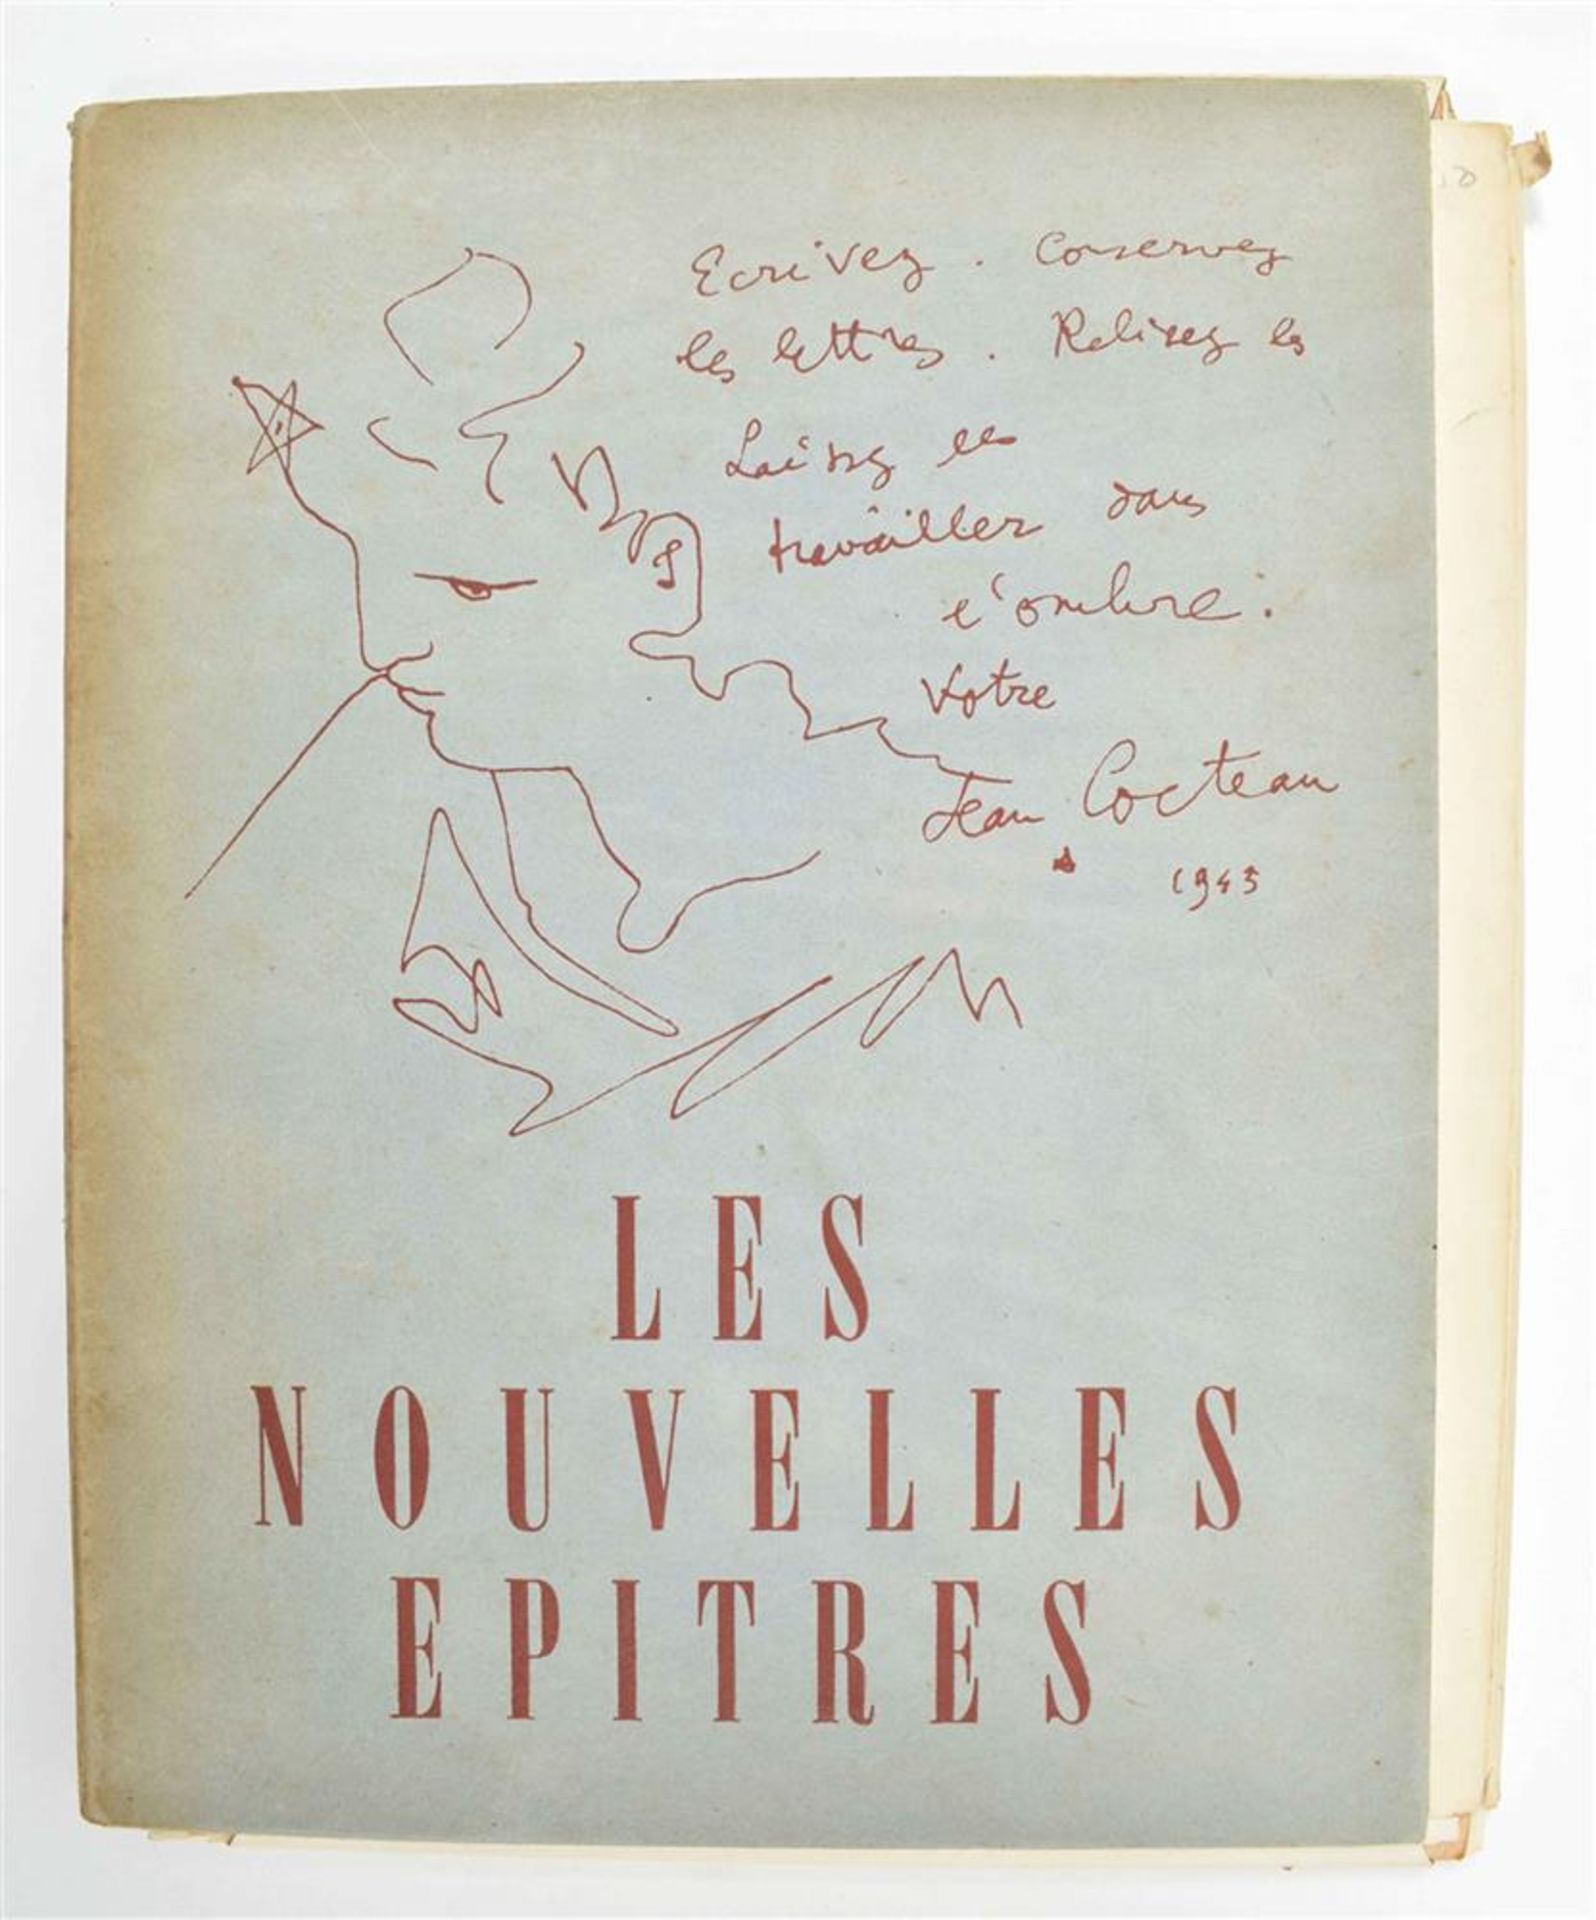 Les nouvelles epitres, 1945-1946 - Image 2 of 9